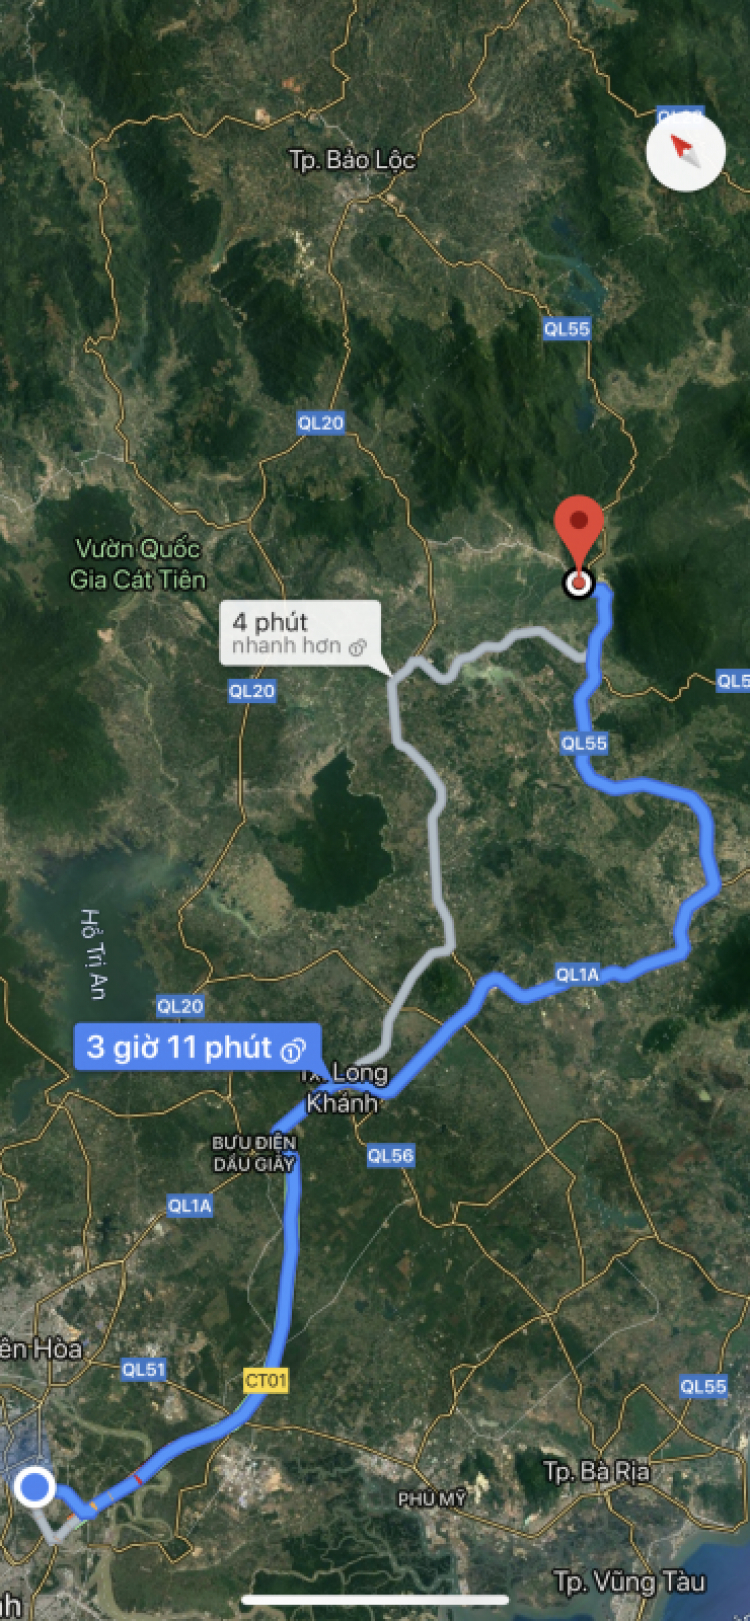 Đi Sài Gòn - Bảo Lộc theo quốc lộ 55 ổn không mấy anh chị em?